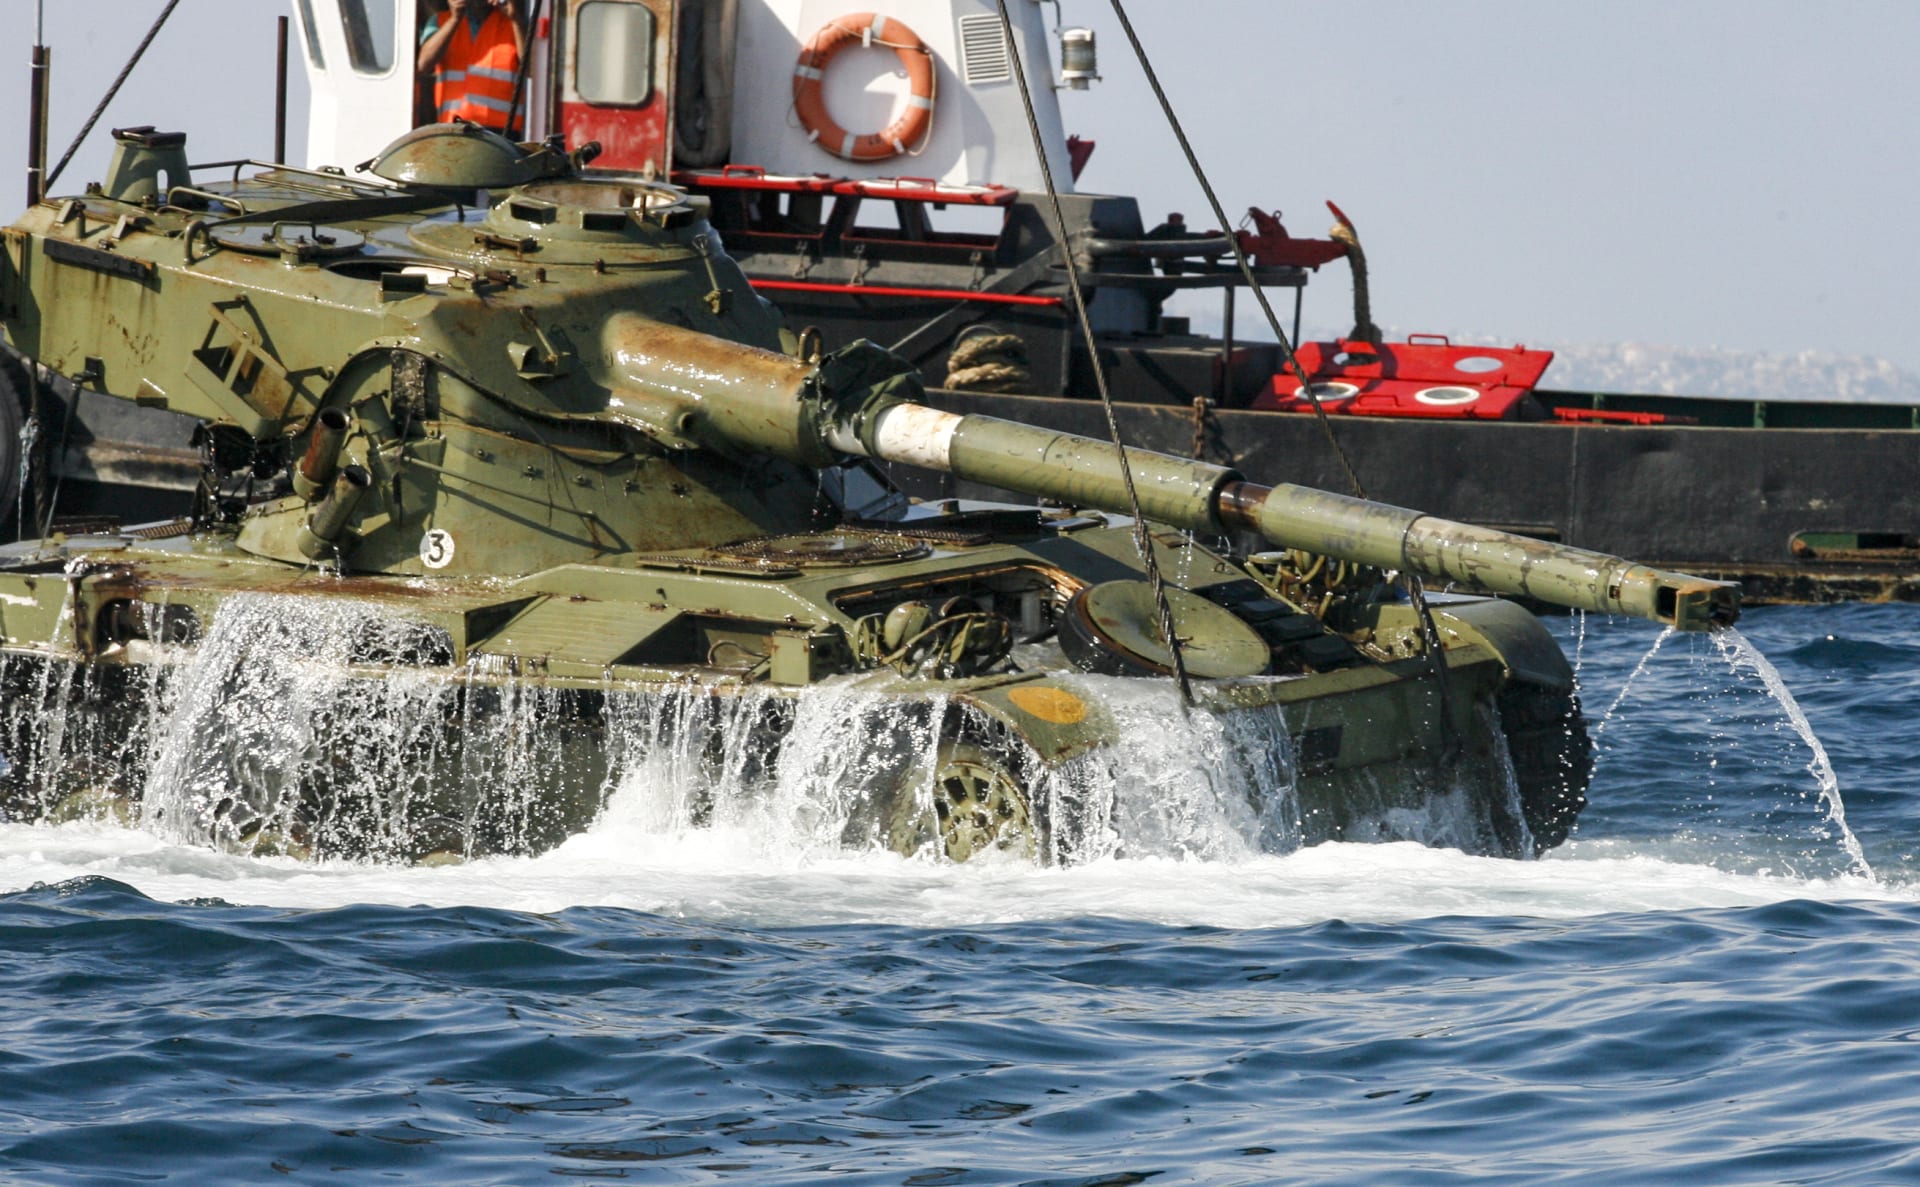 لماذا قام لبنان بإنزال دبابات في مياه البحر قبالة شواطئه؟ 